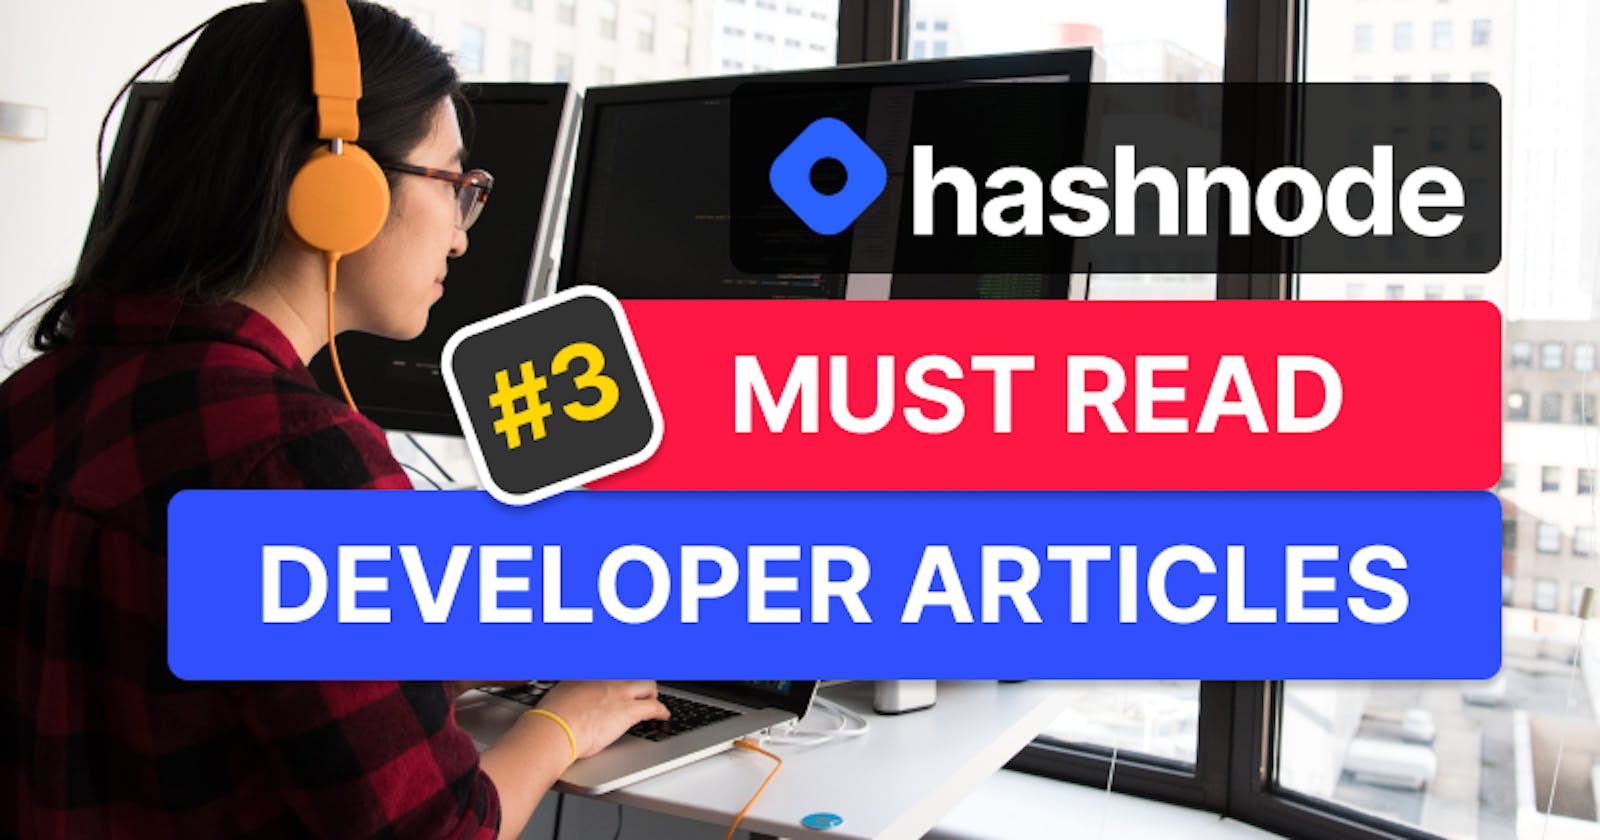 Must Read Developer Articles on Hashnode - #3